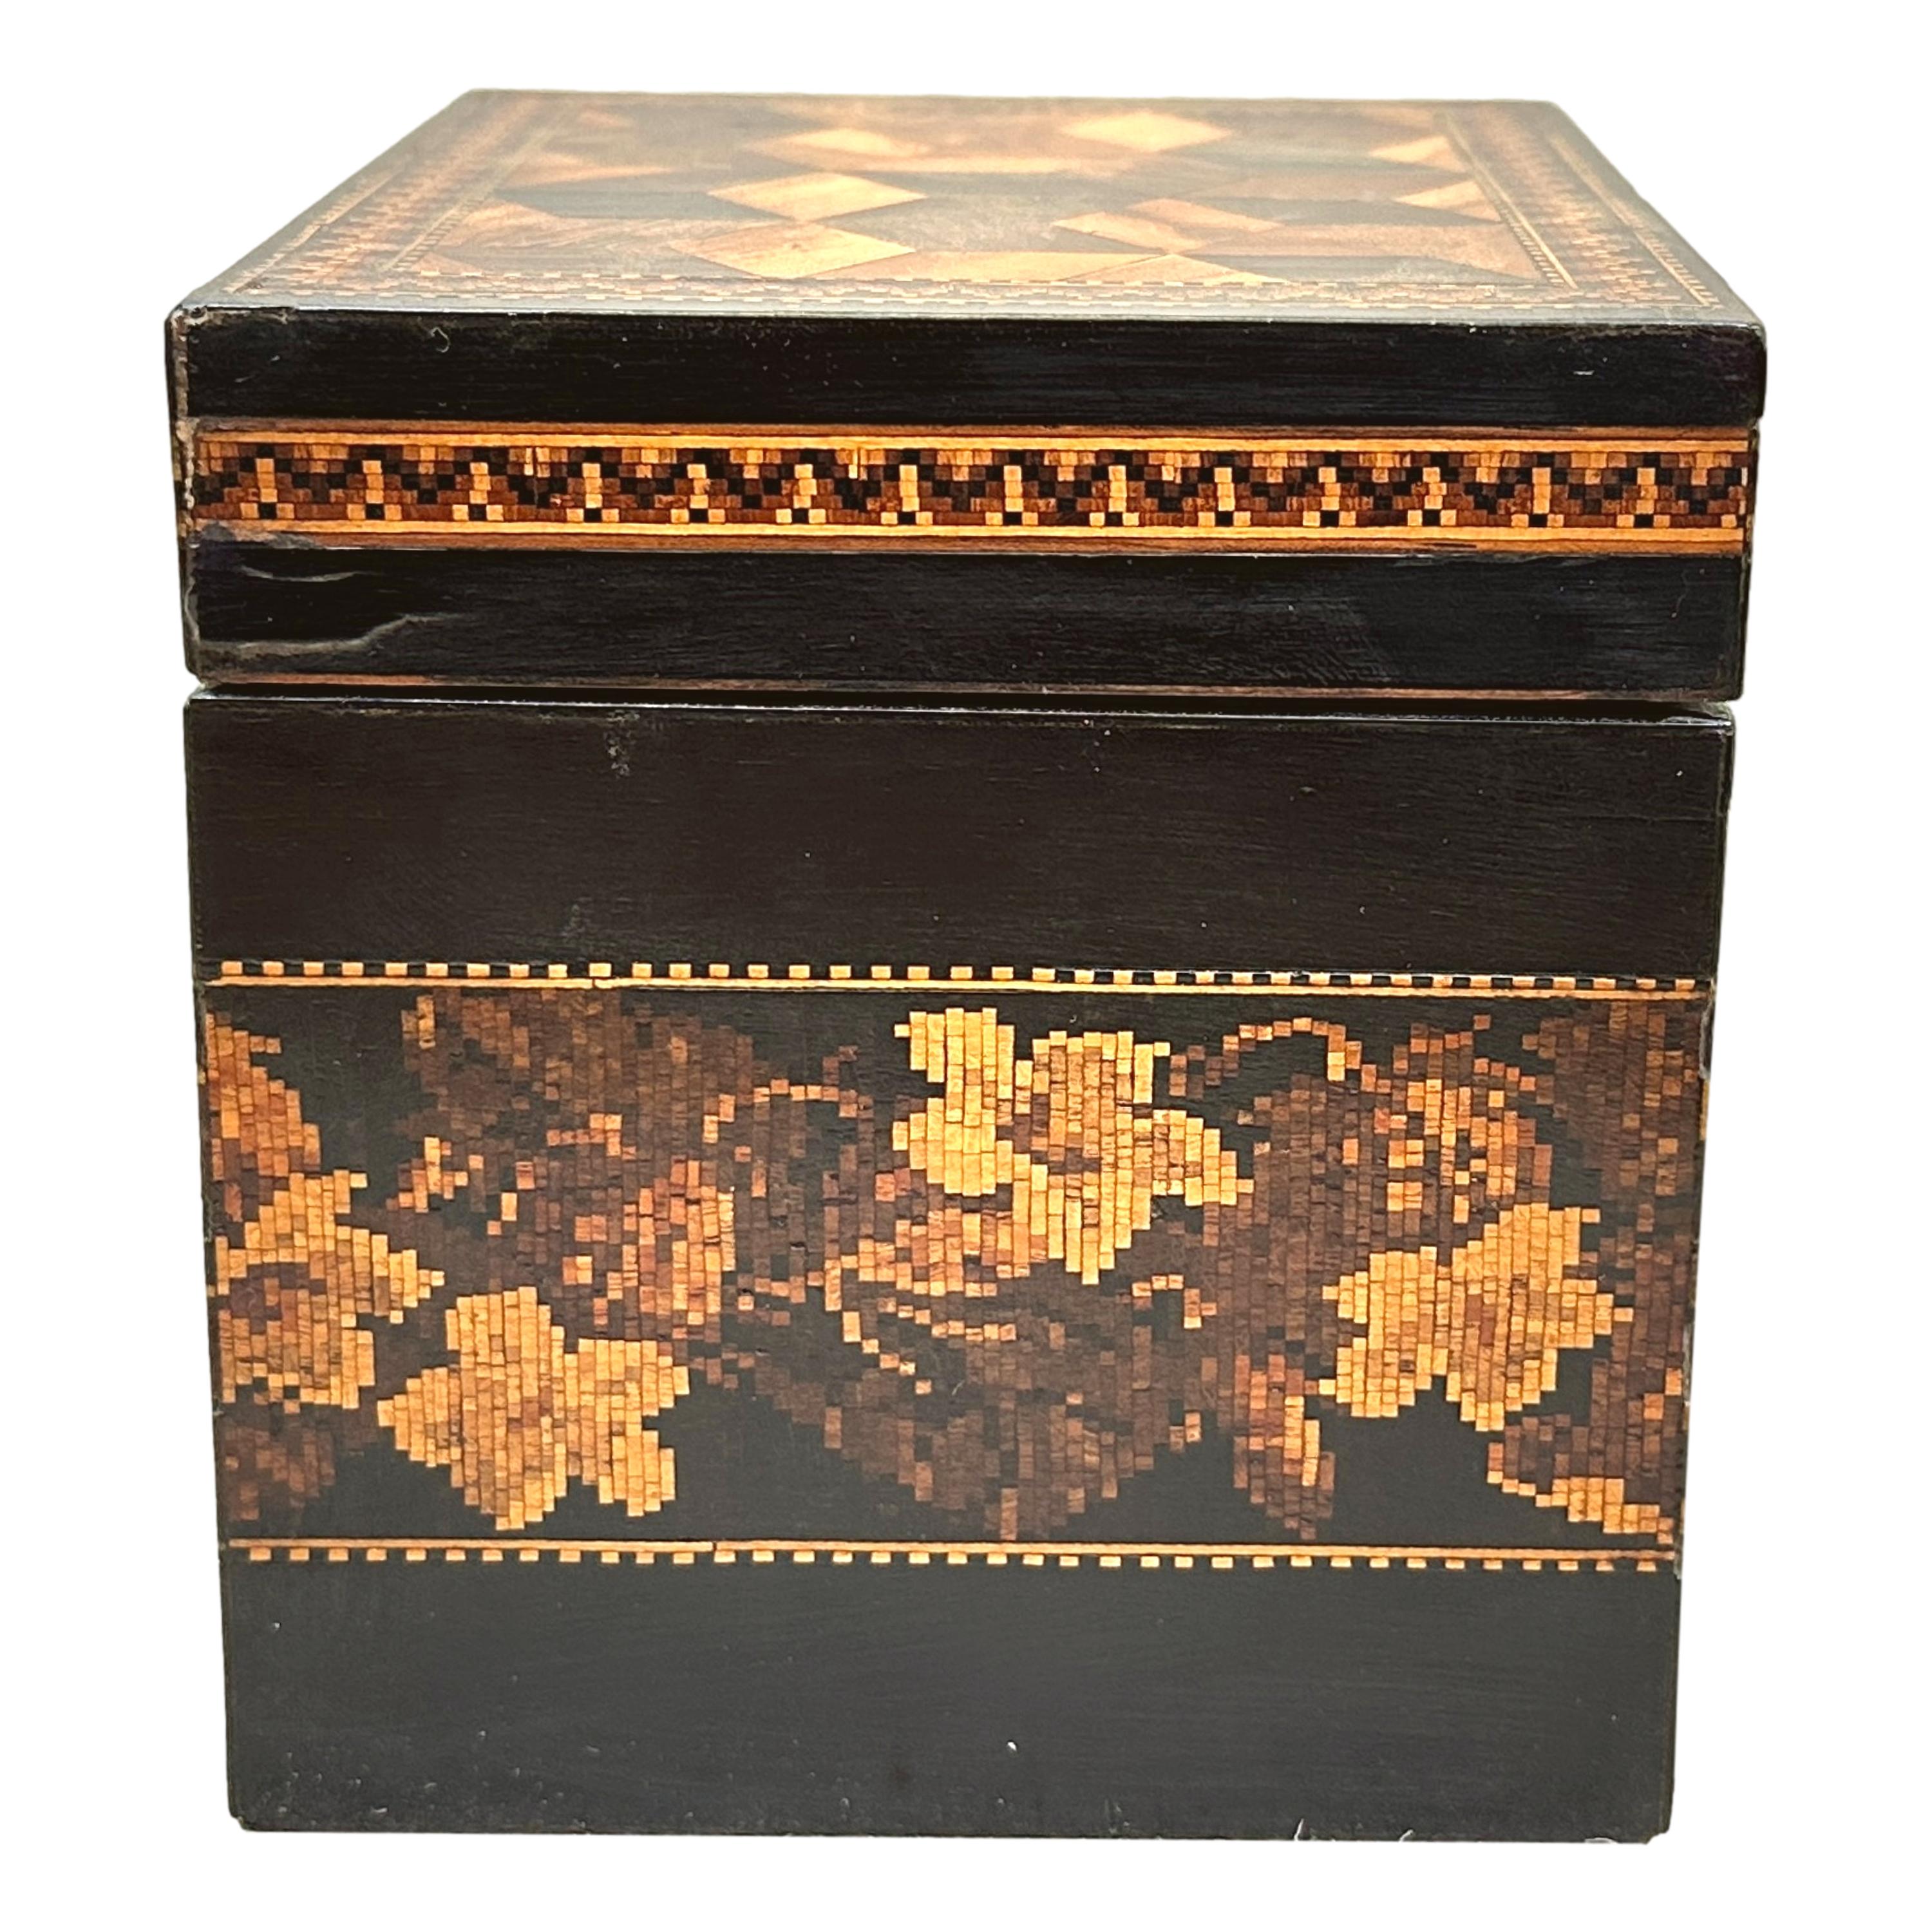 Charmante boîte à thé en faïence de Tunbridge datant du 19e siècle, avec une jolie bande florale sur le corps principal et des cubes en perspective en marqueterie sur le couvercle à charnière qui renferme l'intérieur du couvercle.


Le thé était une